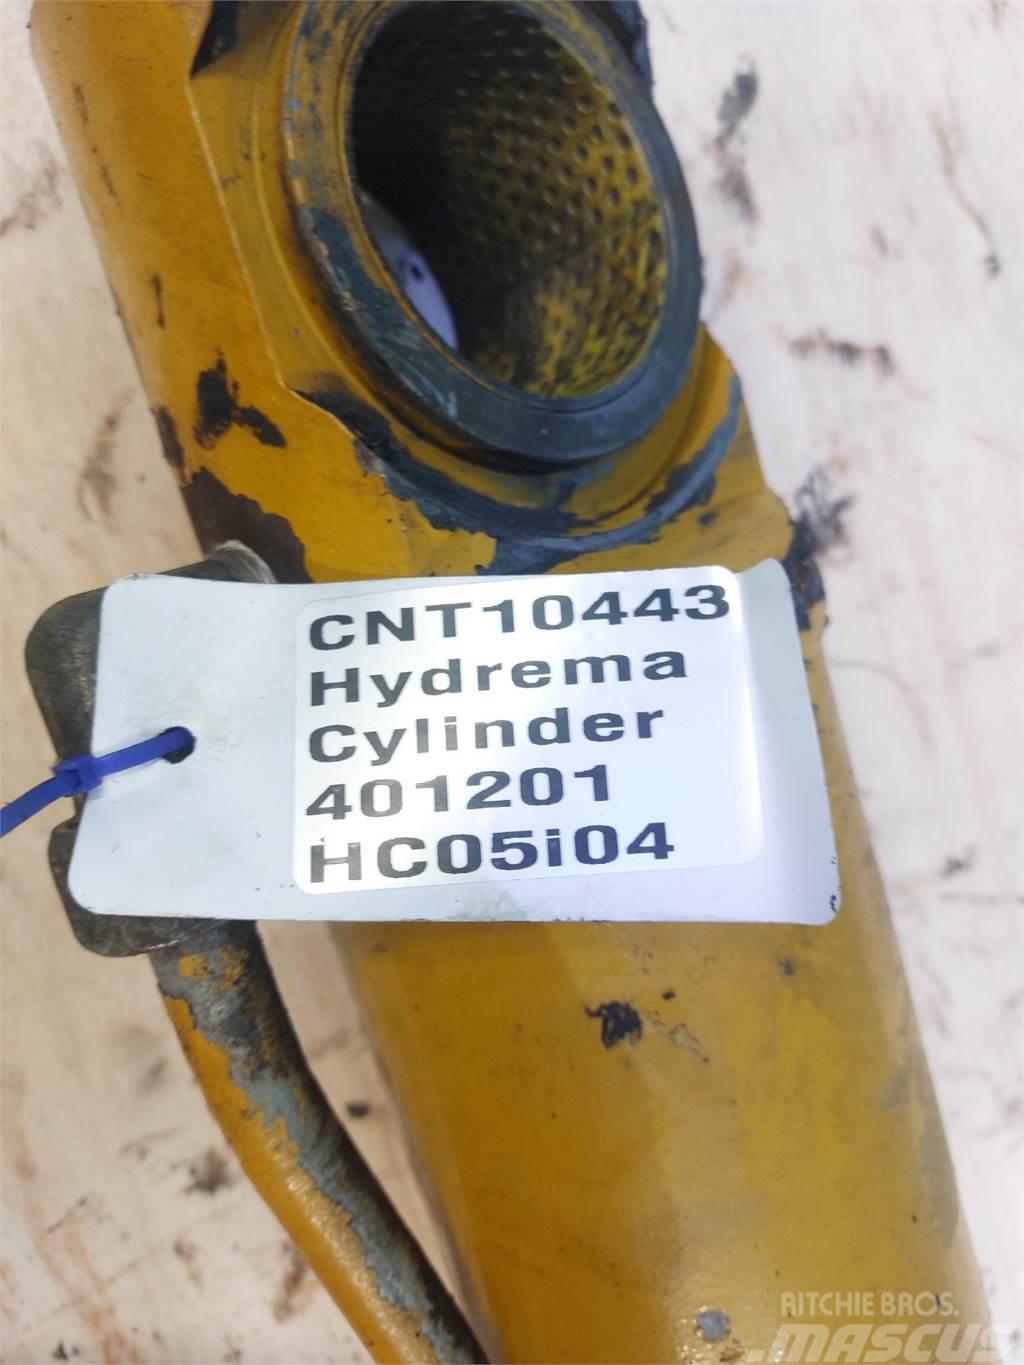 Hydrema 906C Lanças e braços dippers